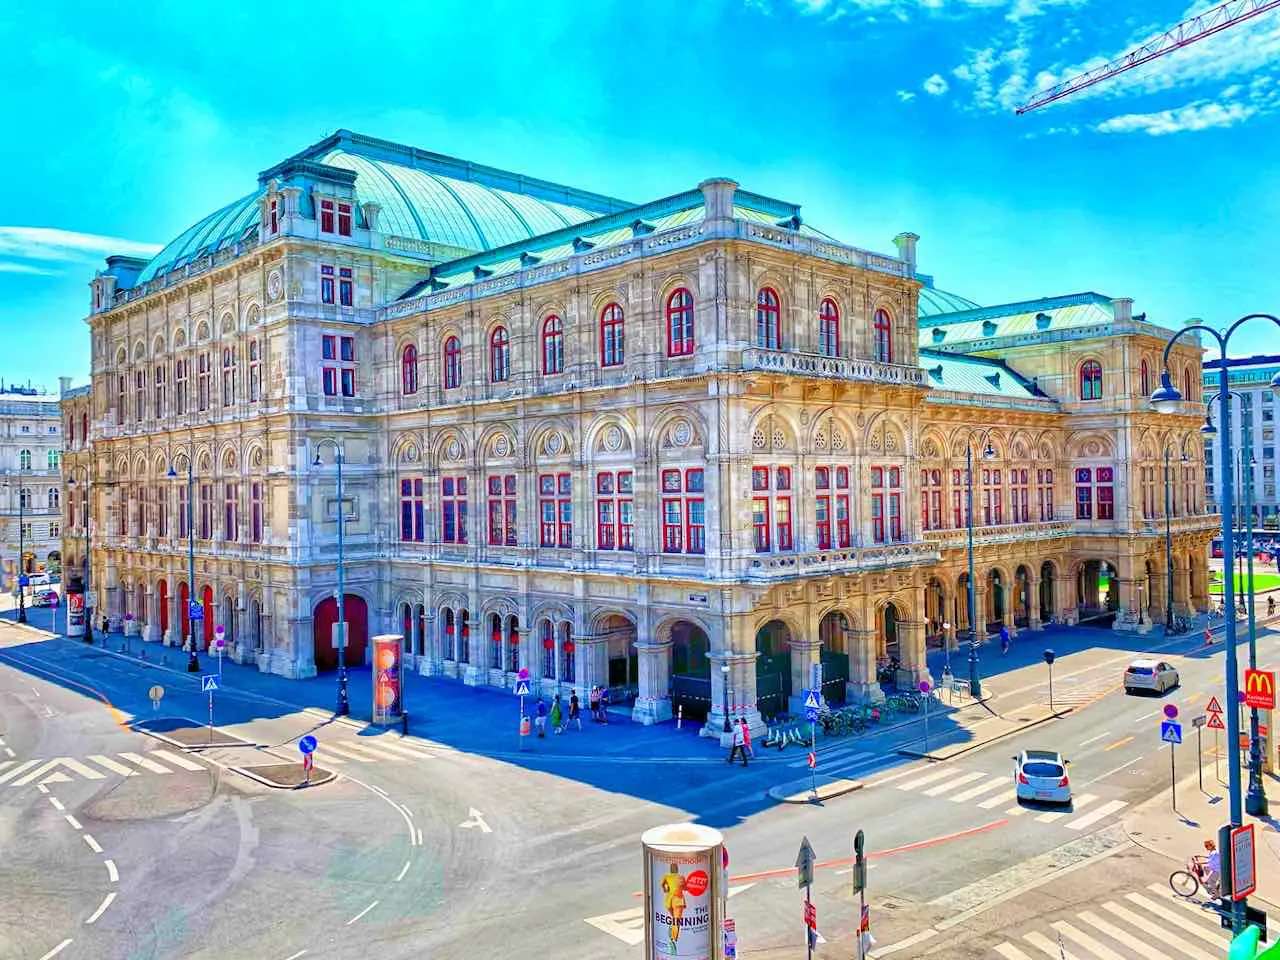 ウィーン オペラ ハウス ニーダーエスターライヒ州 ジグソーパズルオンライン